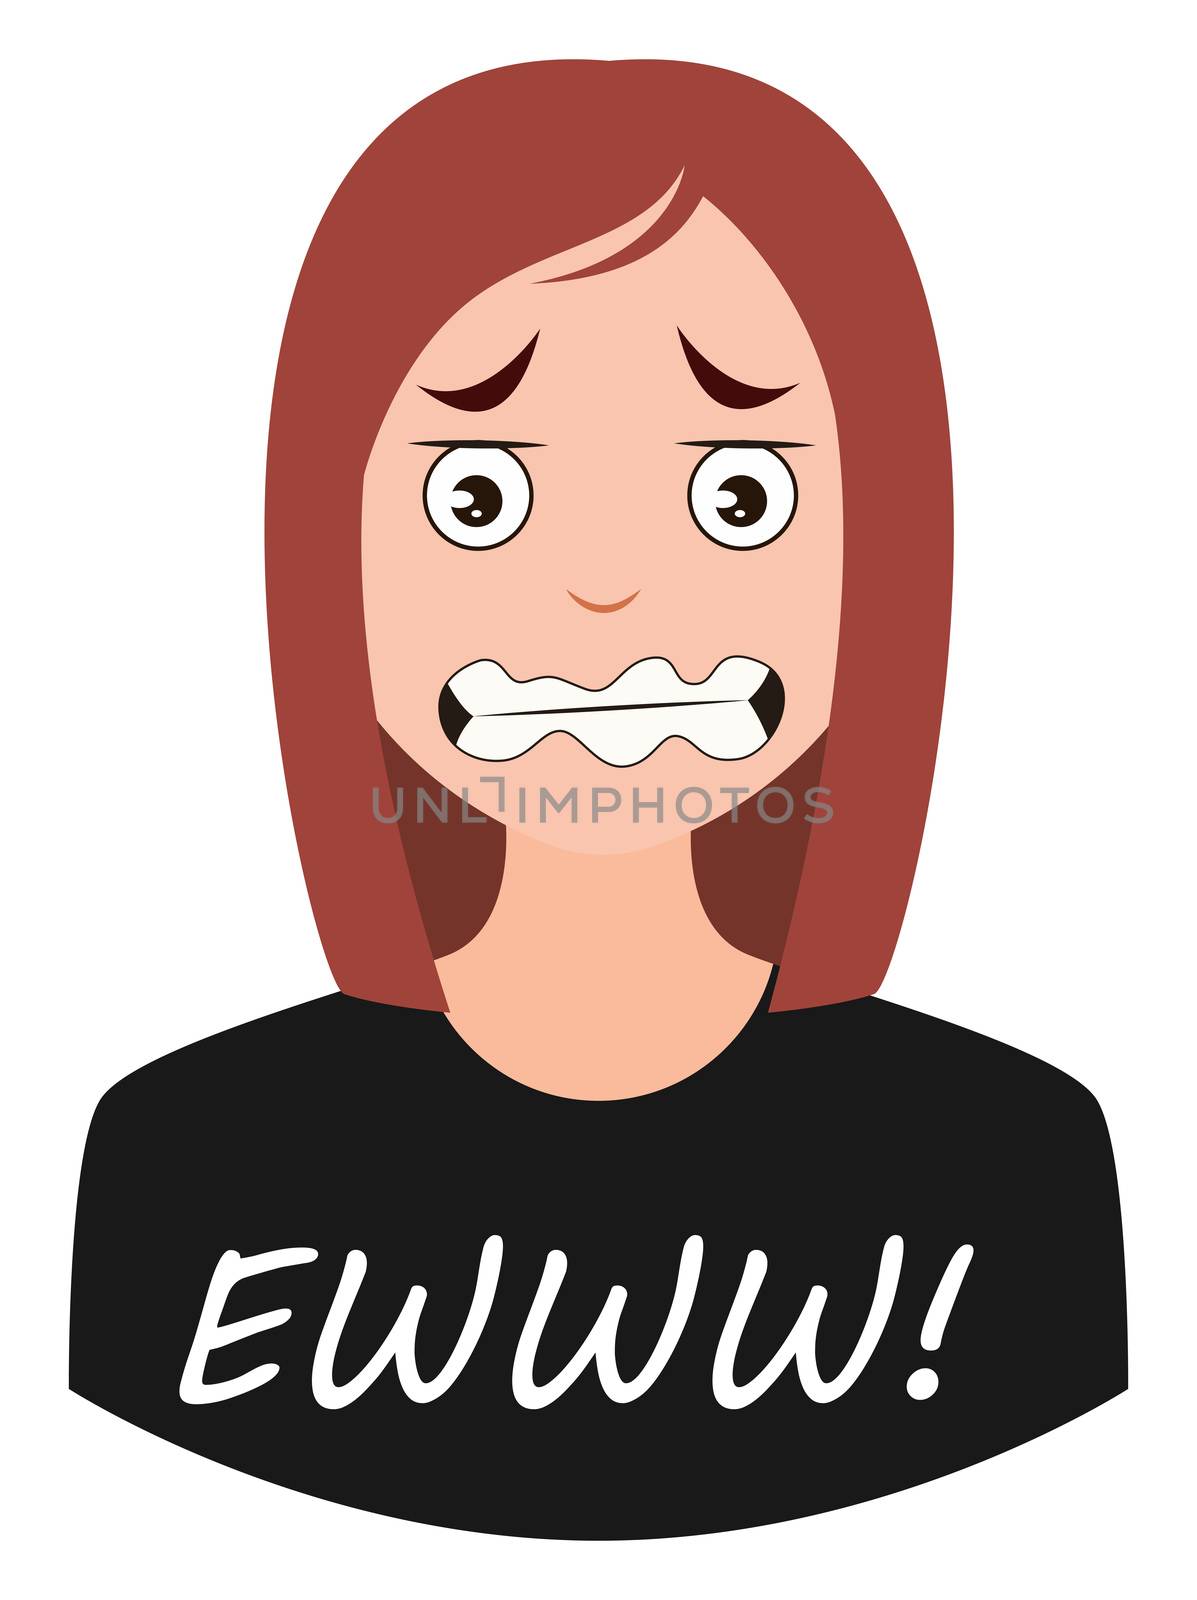 Ewww girl emoji, illustration, vector on white background by Morphart